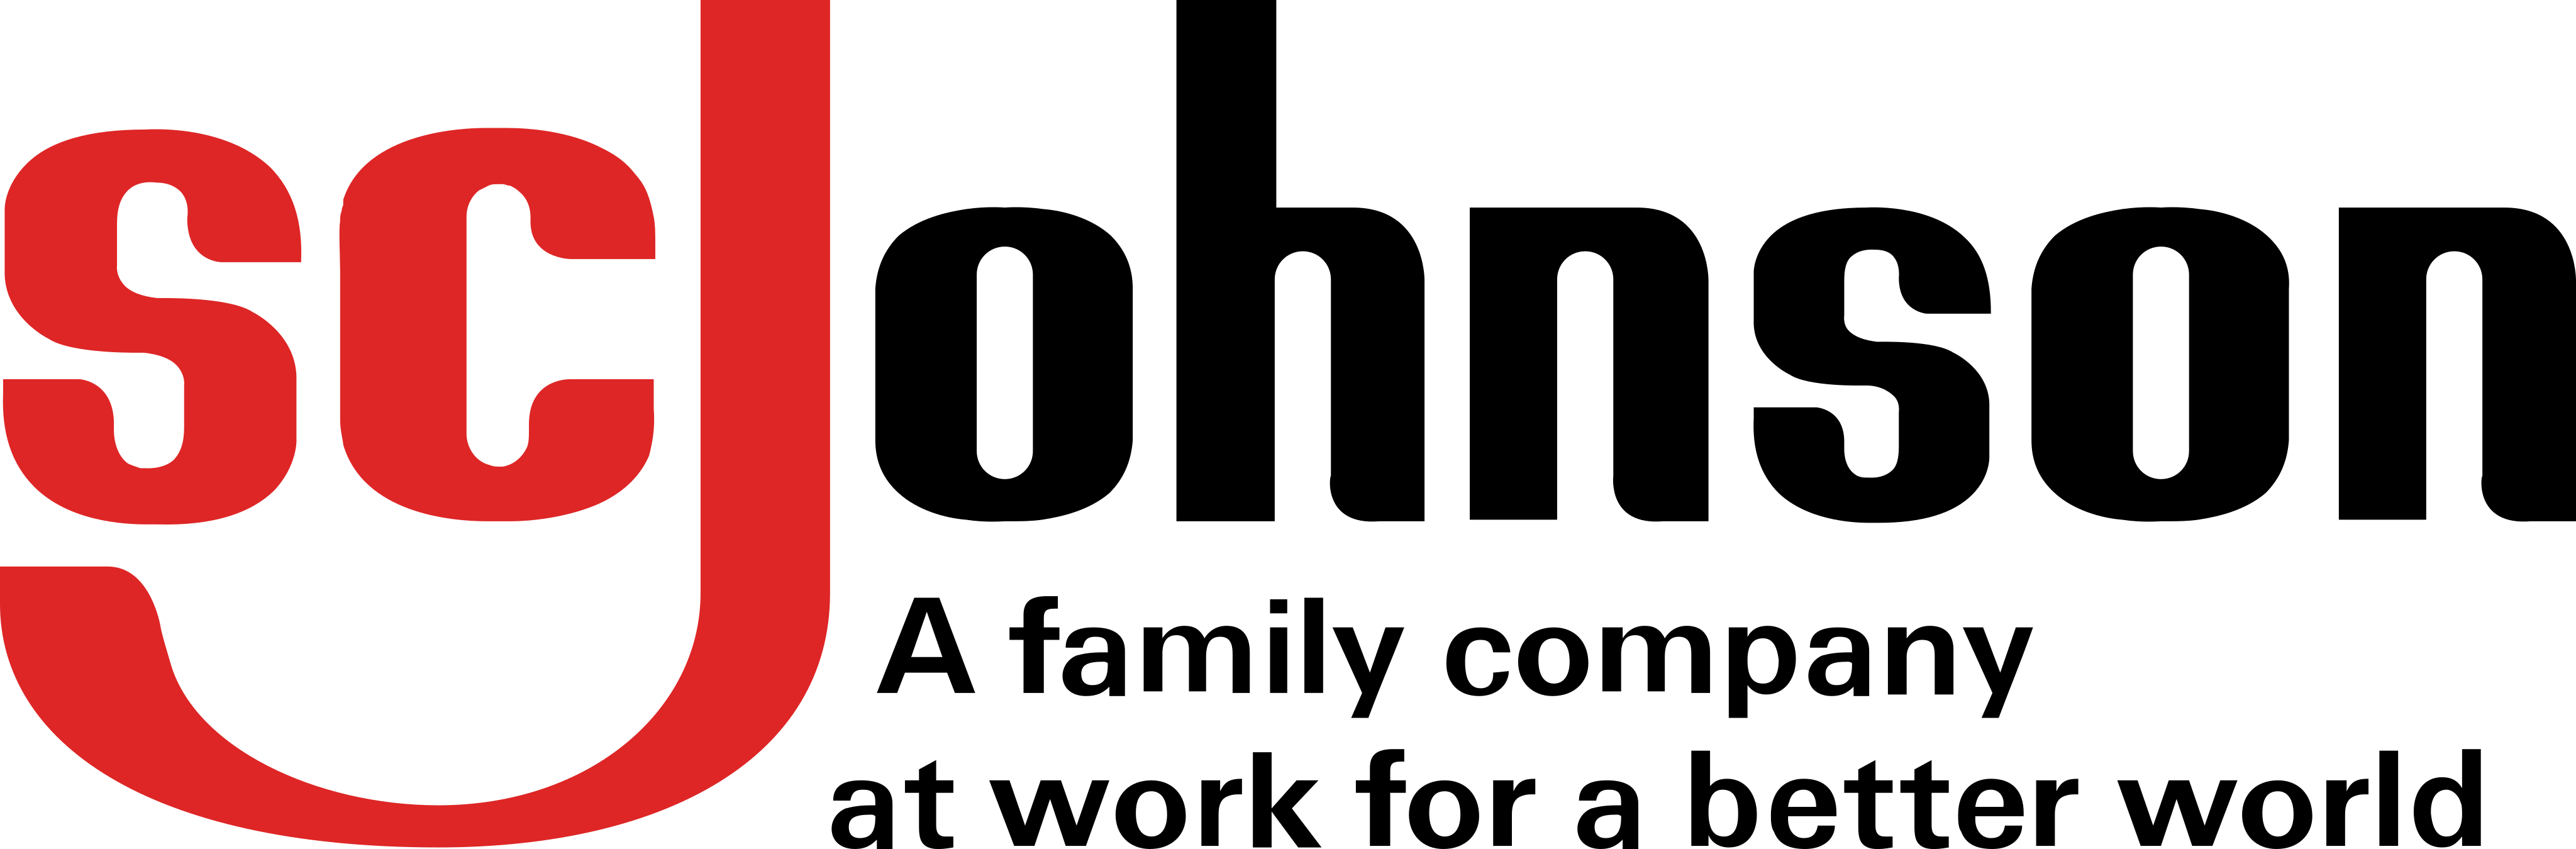 Aerosolv logo